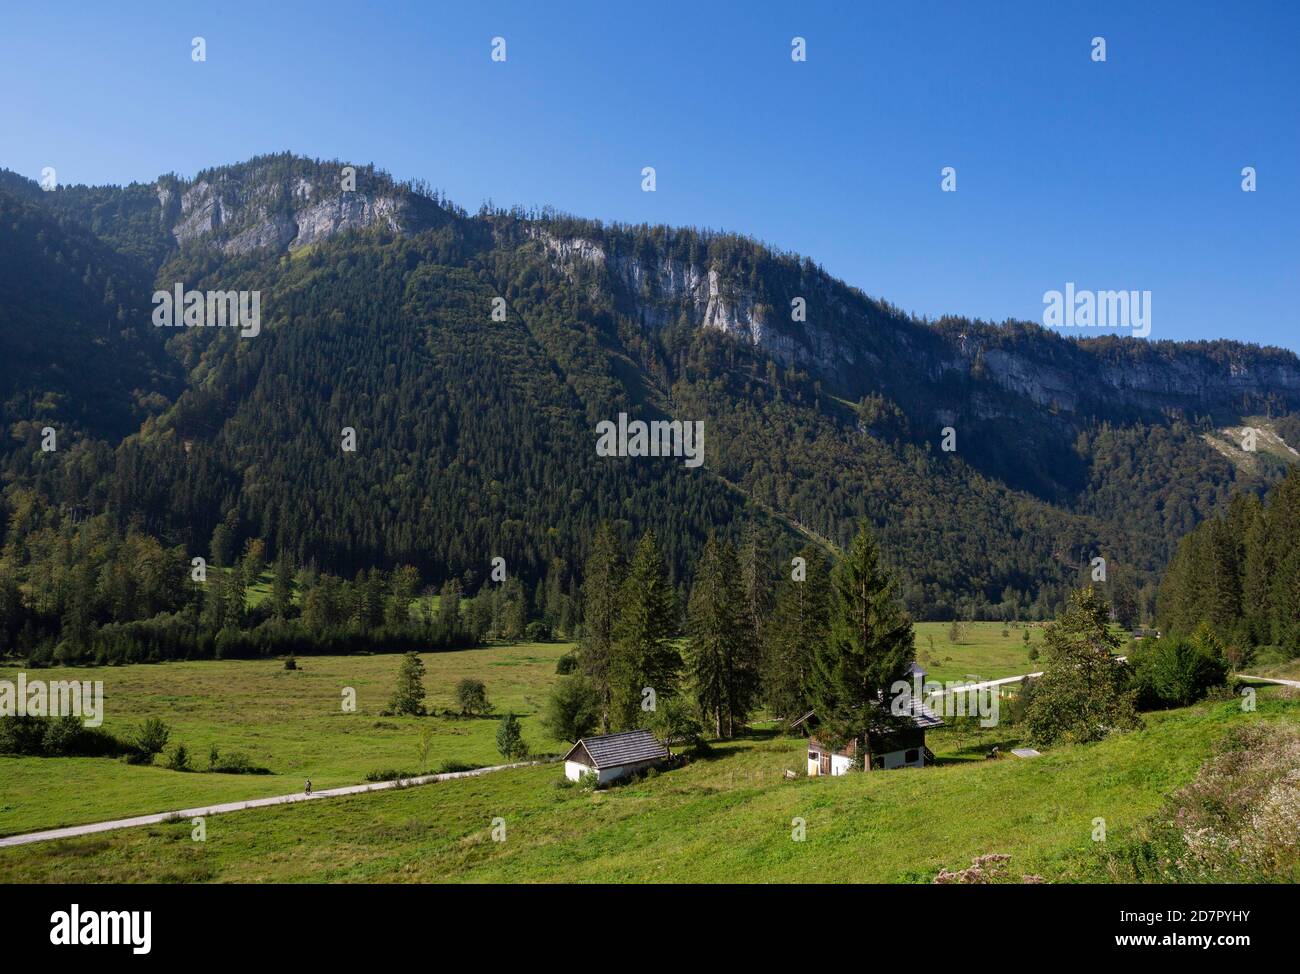 Prés alpins et huttes alpines à Rettenbachtal, Bad Ischl, Salzkammergut, haute-Autriche, Autriche Banque D'Images